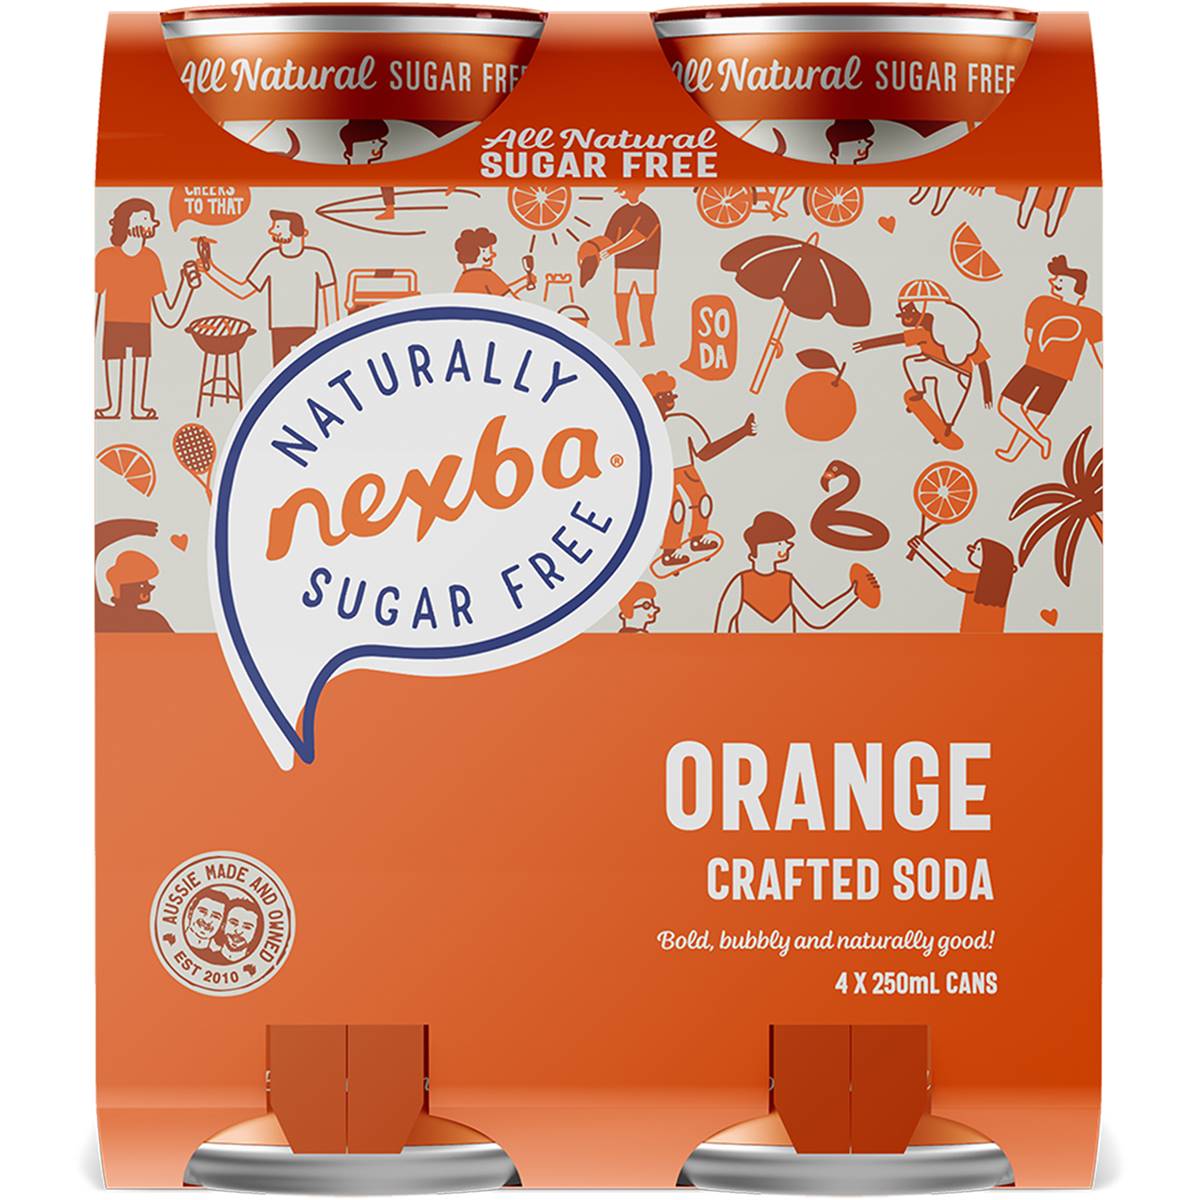 Nexba Orange Sugar-Free Crafted Soda 4 x 250ml